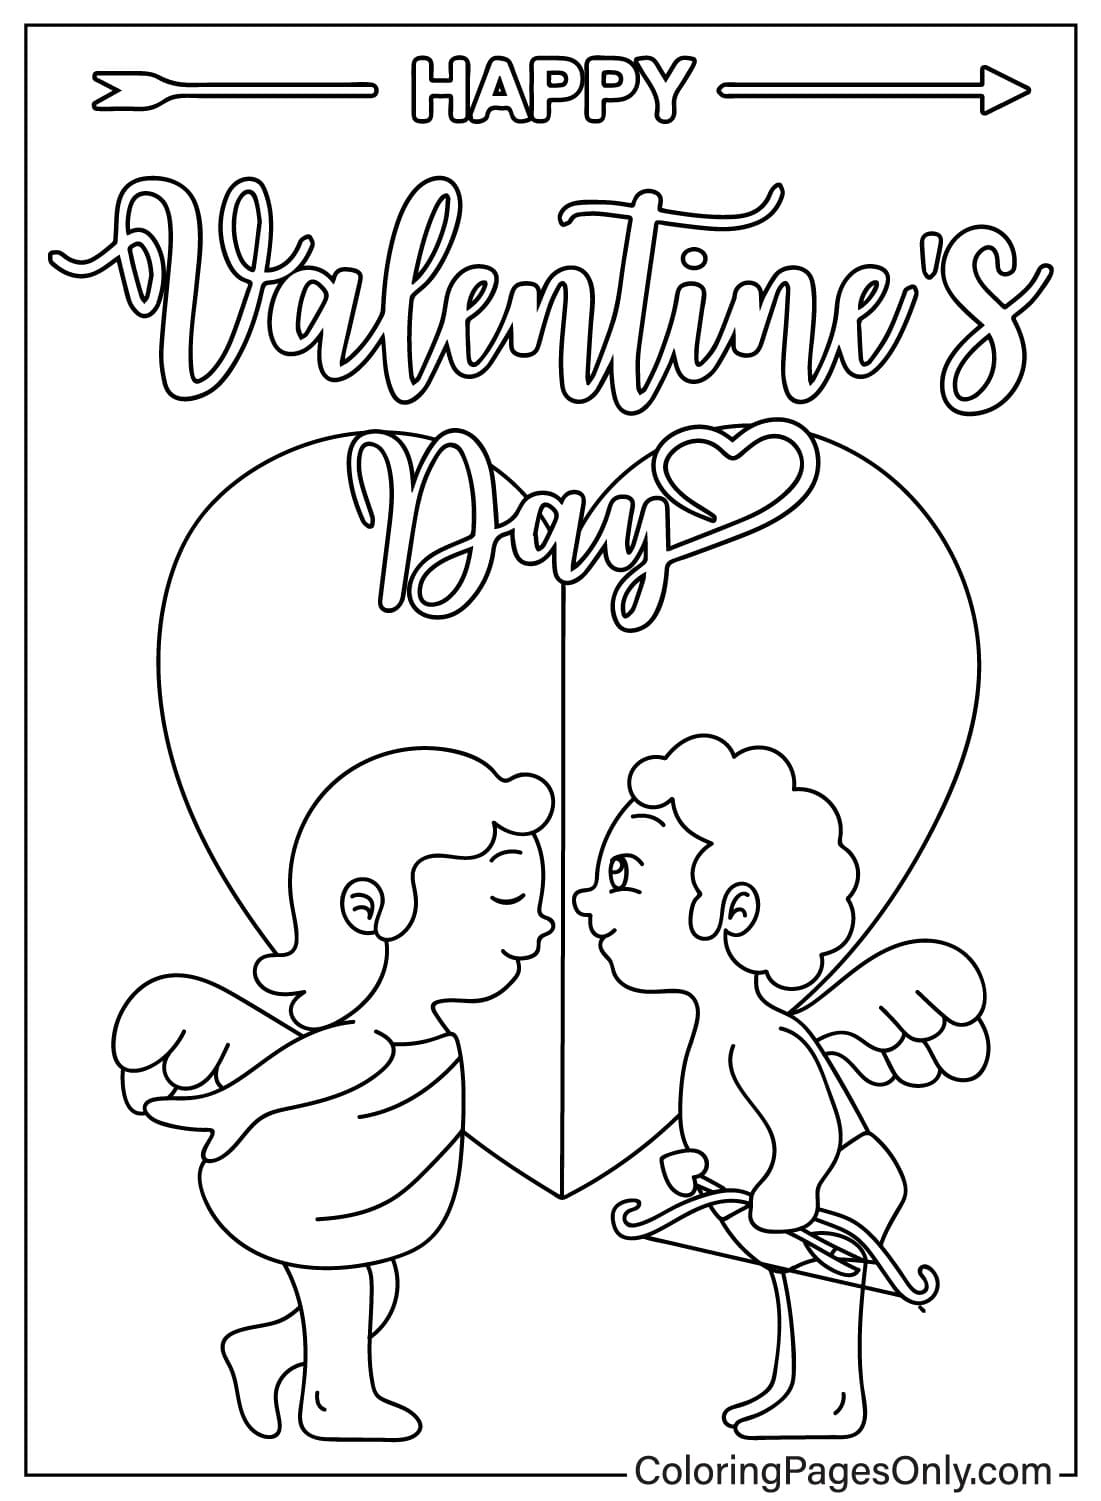 Página para colorear de Cupido del día de San Valentín gratis desde el día de San Valentín